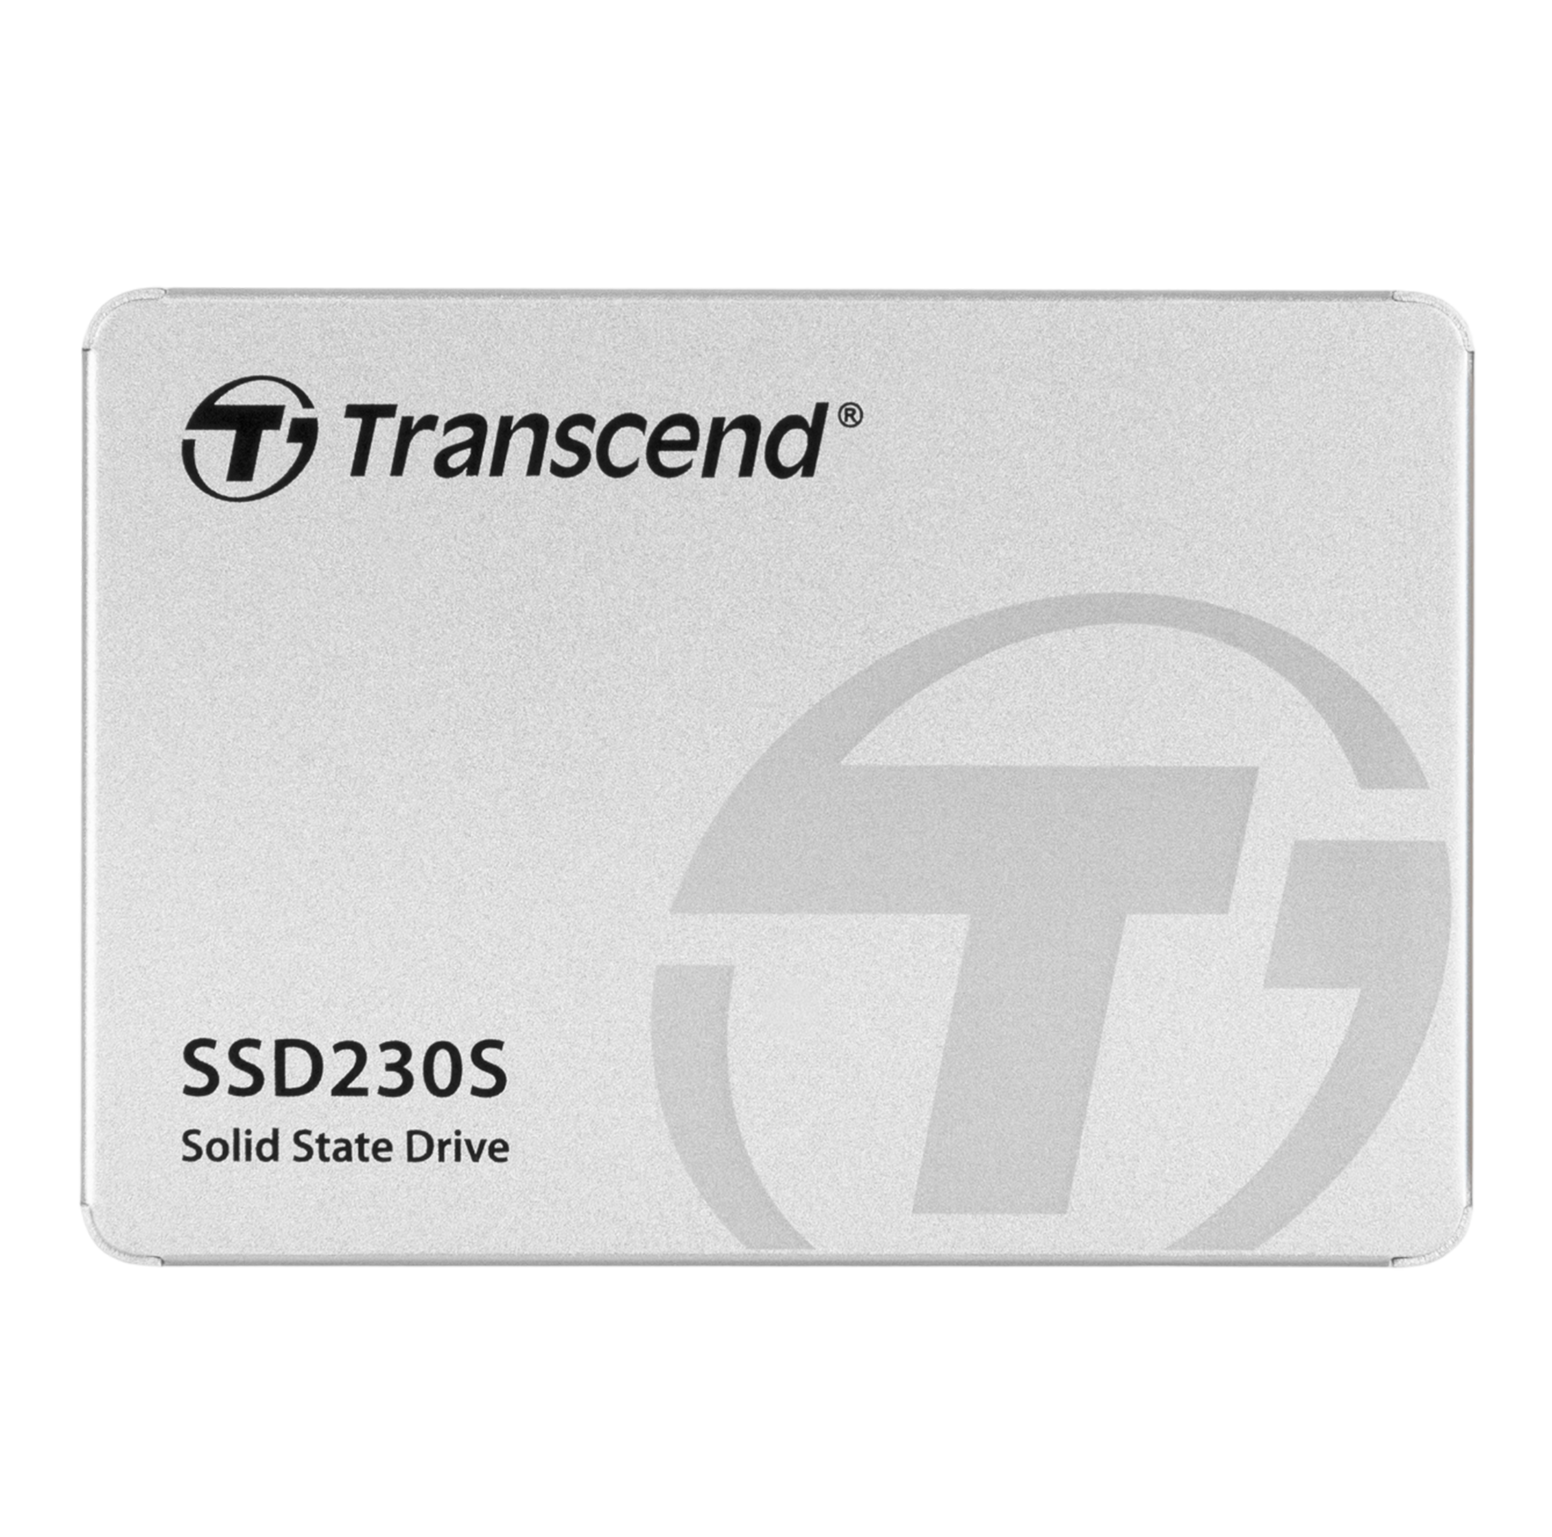 Transcend 4TB 2.5” SATA III SSD230S